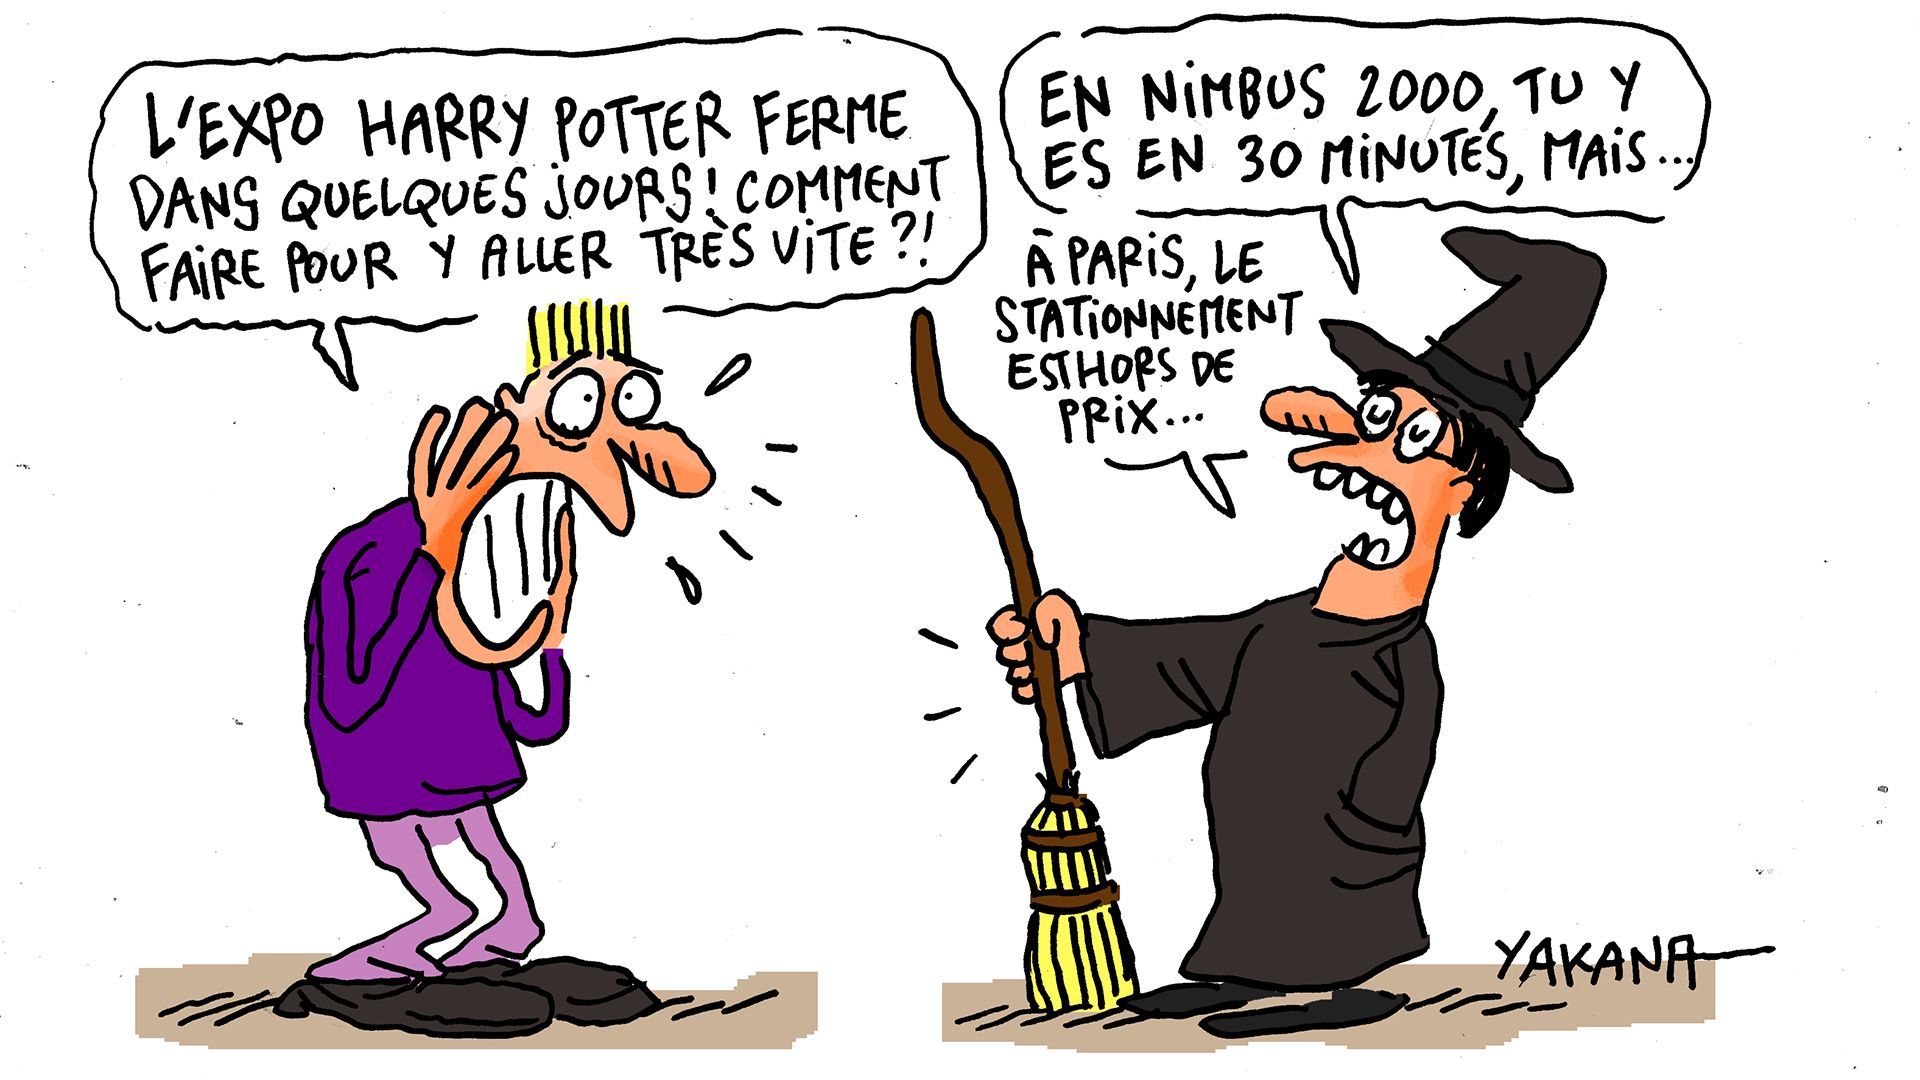 Près de 500.000 visiteurs à l'exposition Harry Potter, qui ferme ses portes à Paris